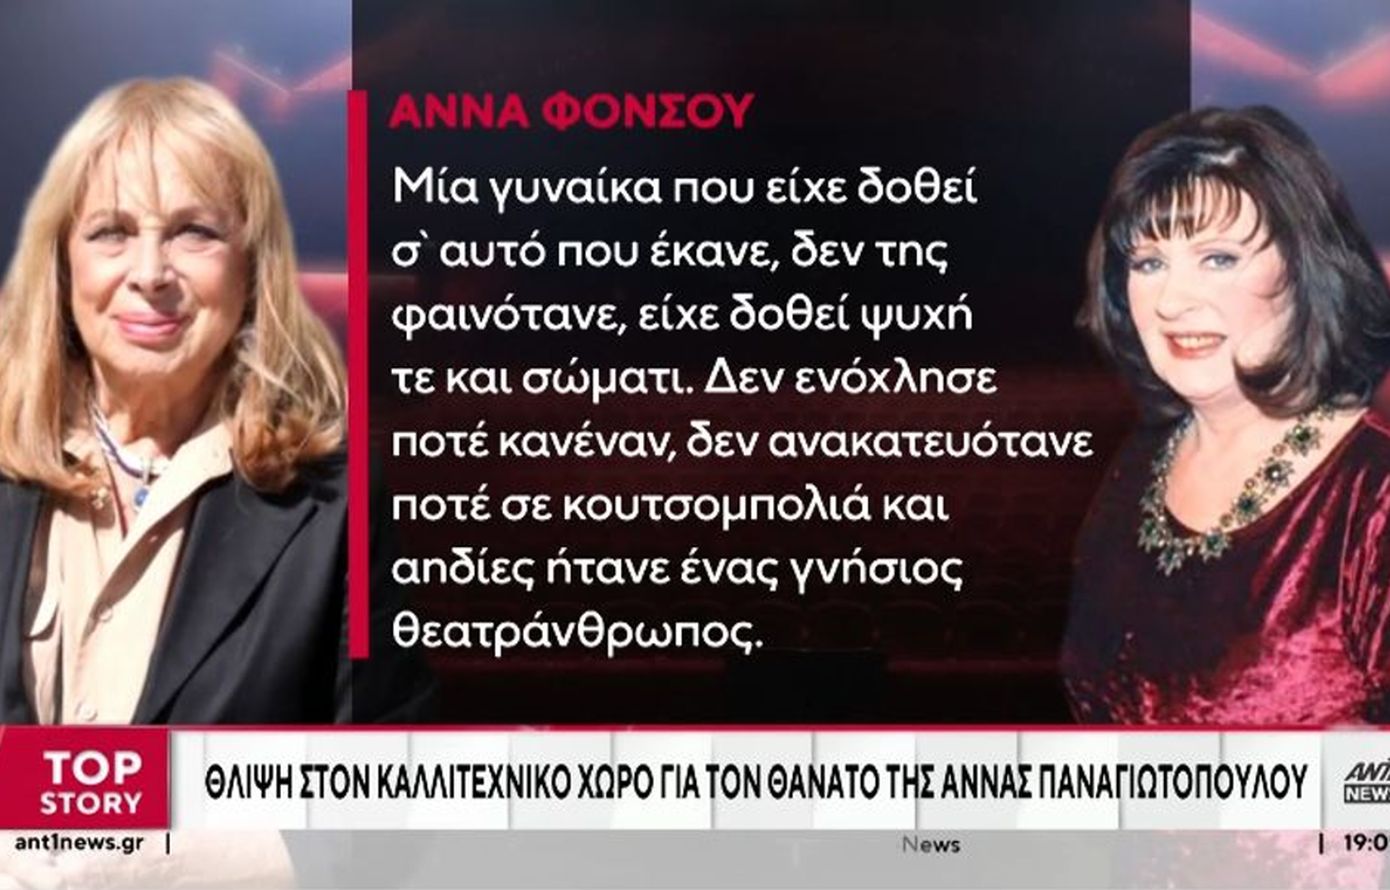 Η Άννα Φόνσου αποχαιρετά την Άννα Παναγιωτοπούλου: «Δεν ενόχλησε ποτέ κανέναν, δεν ανακατευόταν σε κουτσομπολιά»